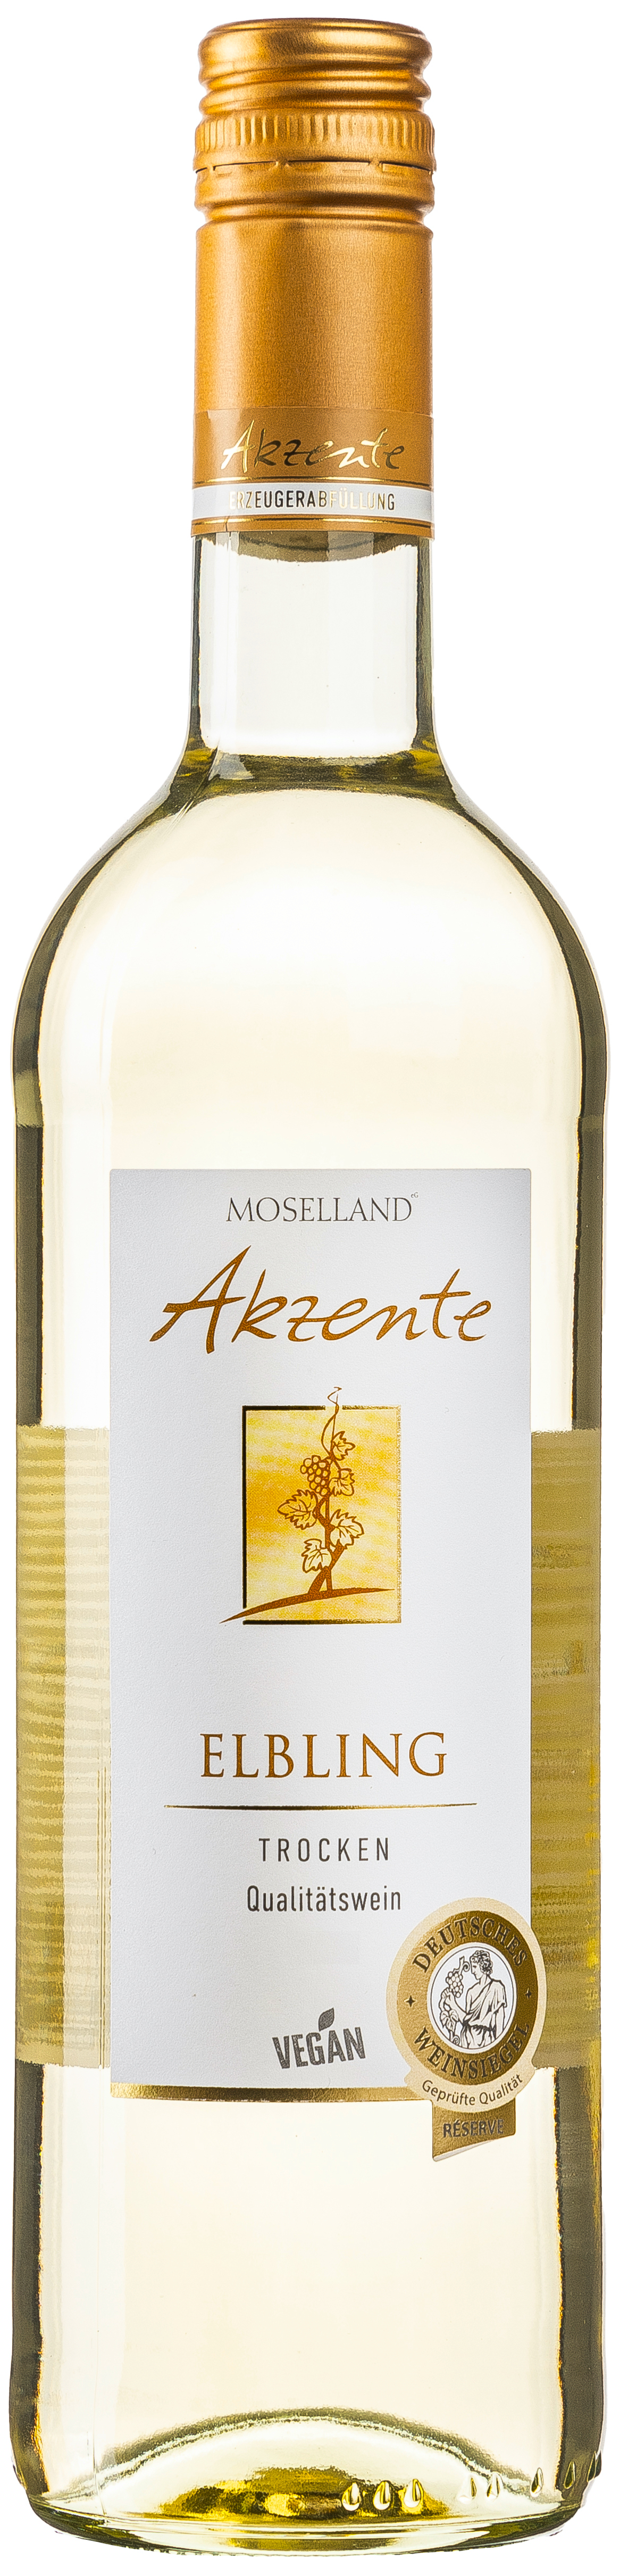 Moselland Akzente Elbling trocken 12% vol. 0,75L